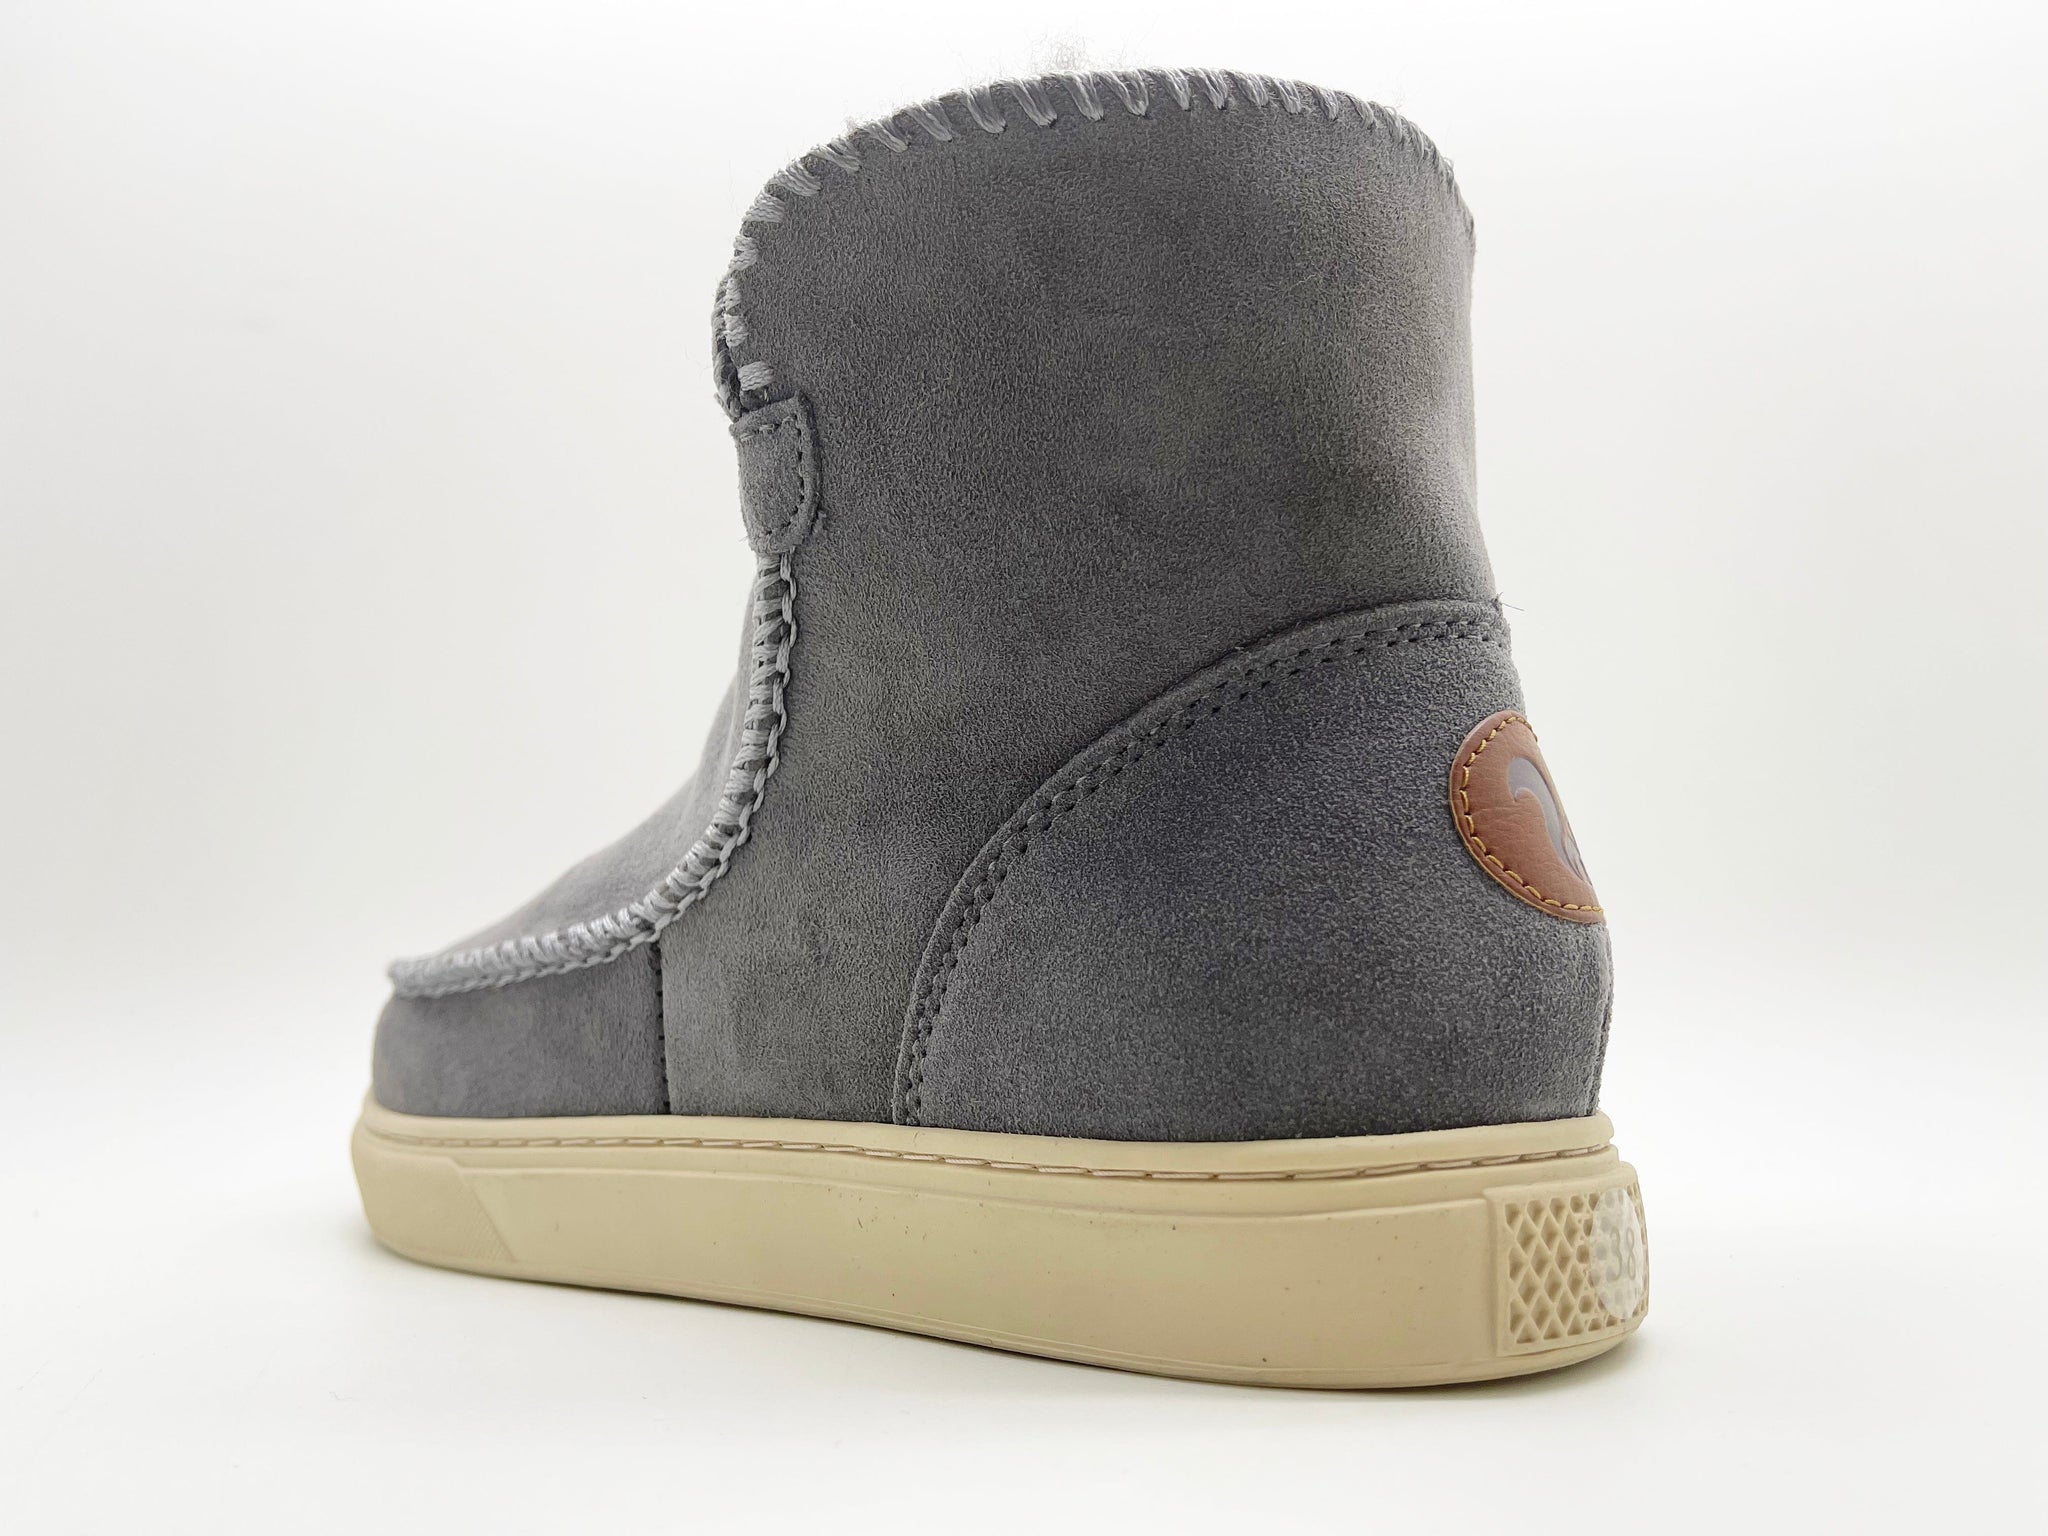 NAT 2 calzado thies 1856 ® Sneakerboot 2 gris oscuro (W) moda sostenible moda ética